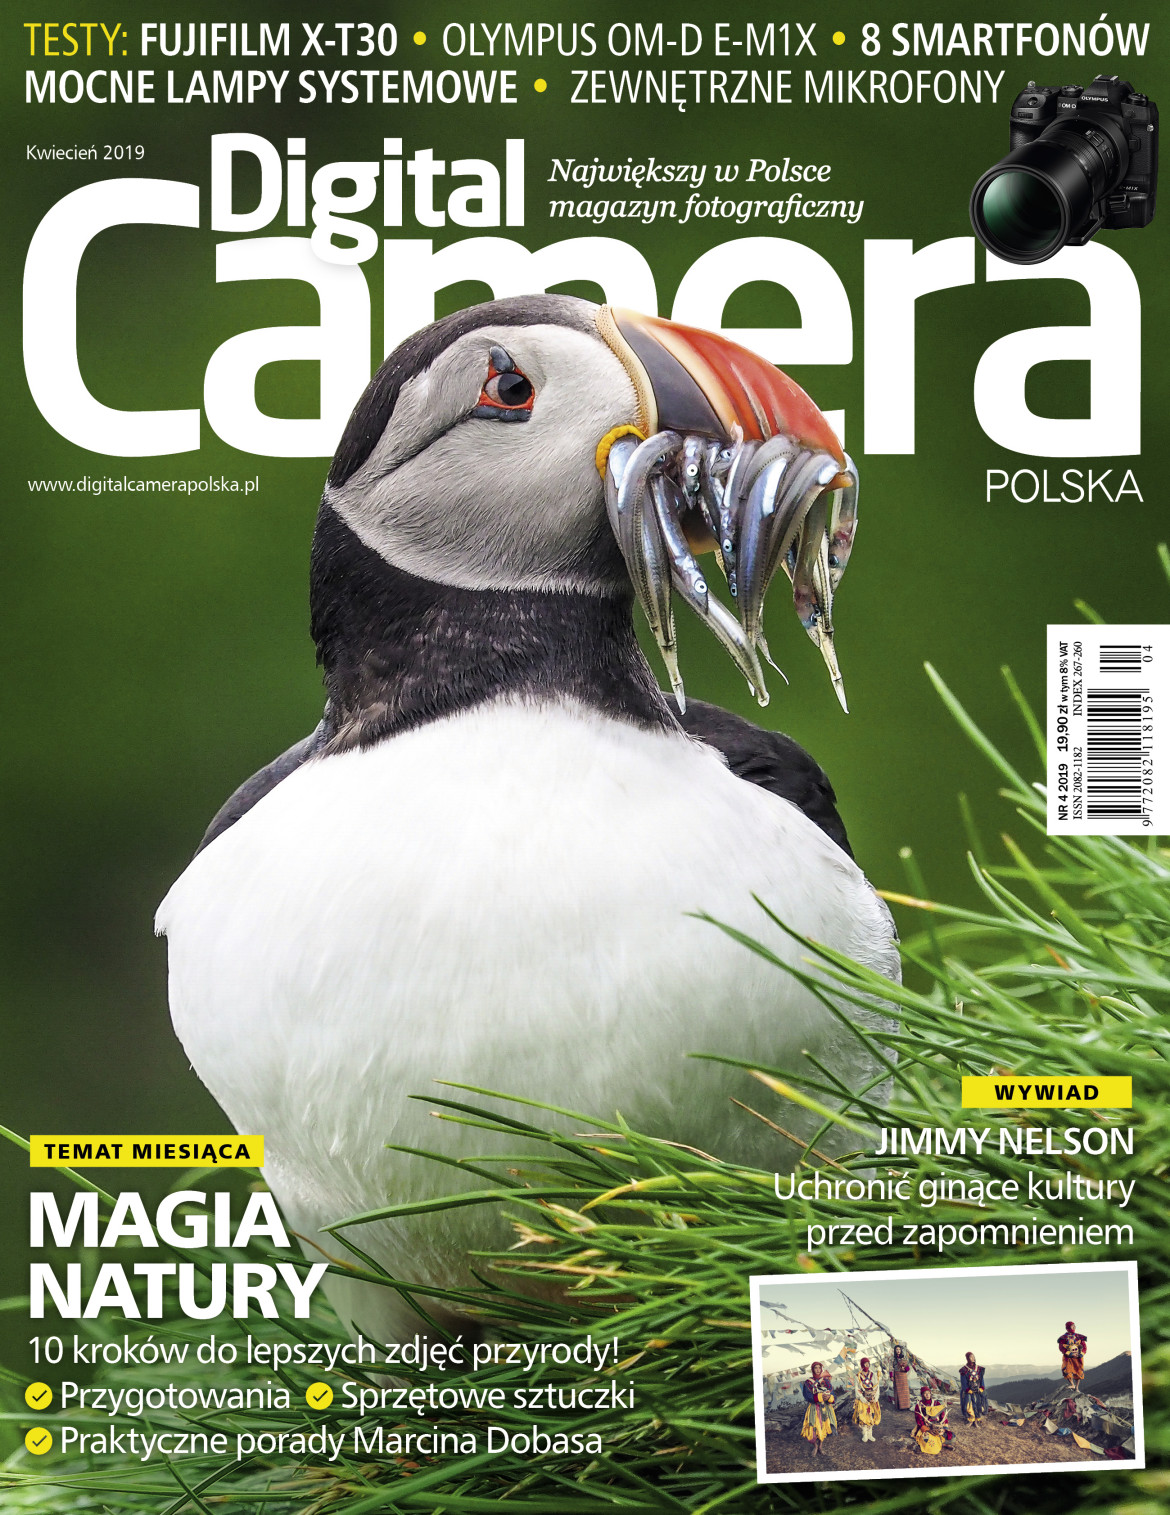 Digital Camera Polska, 04/2019